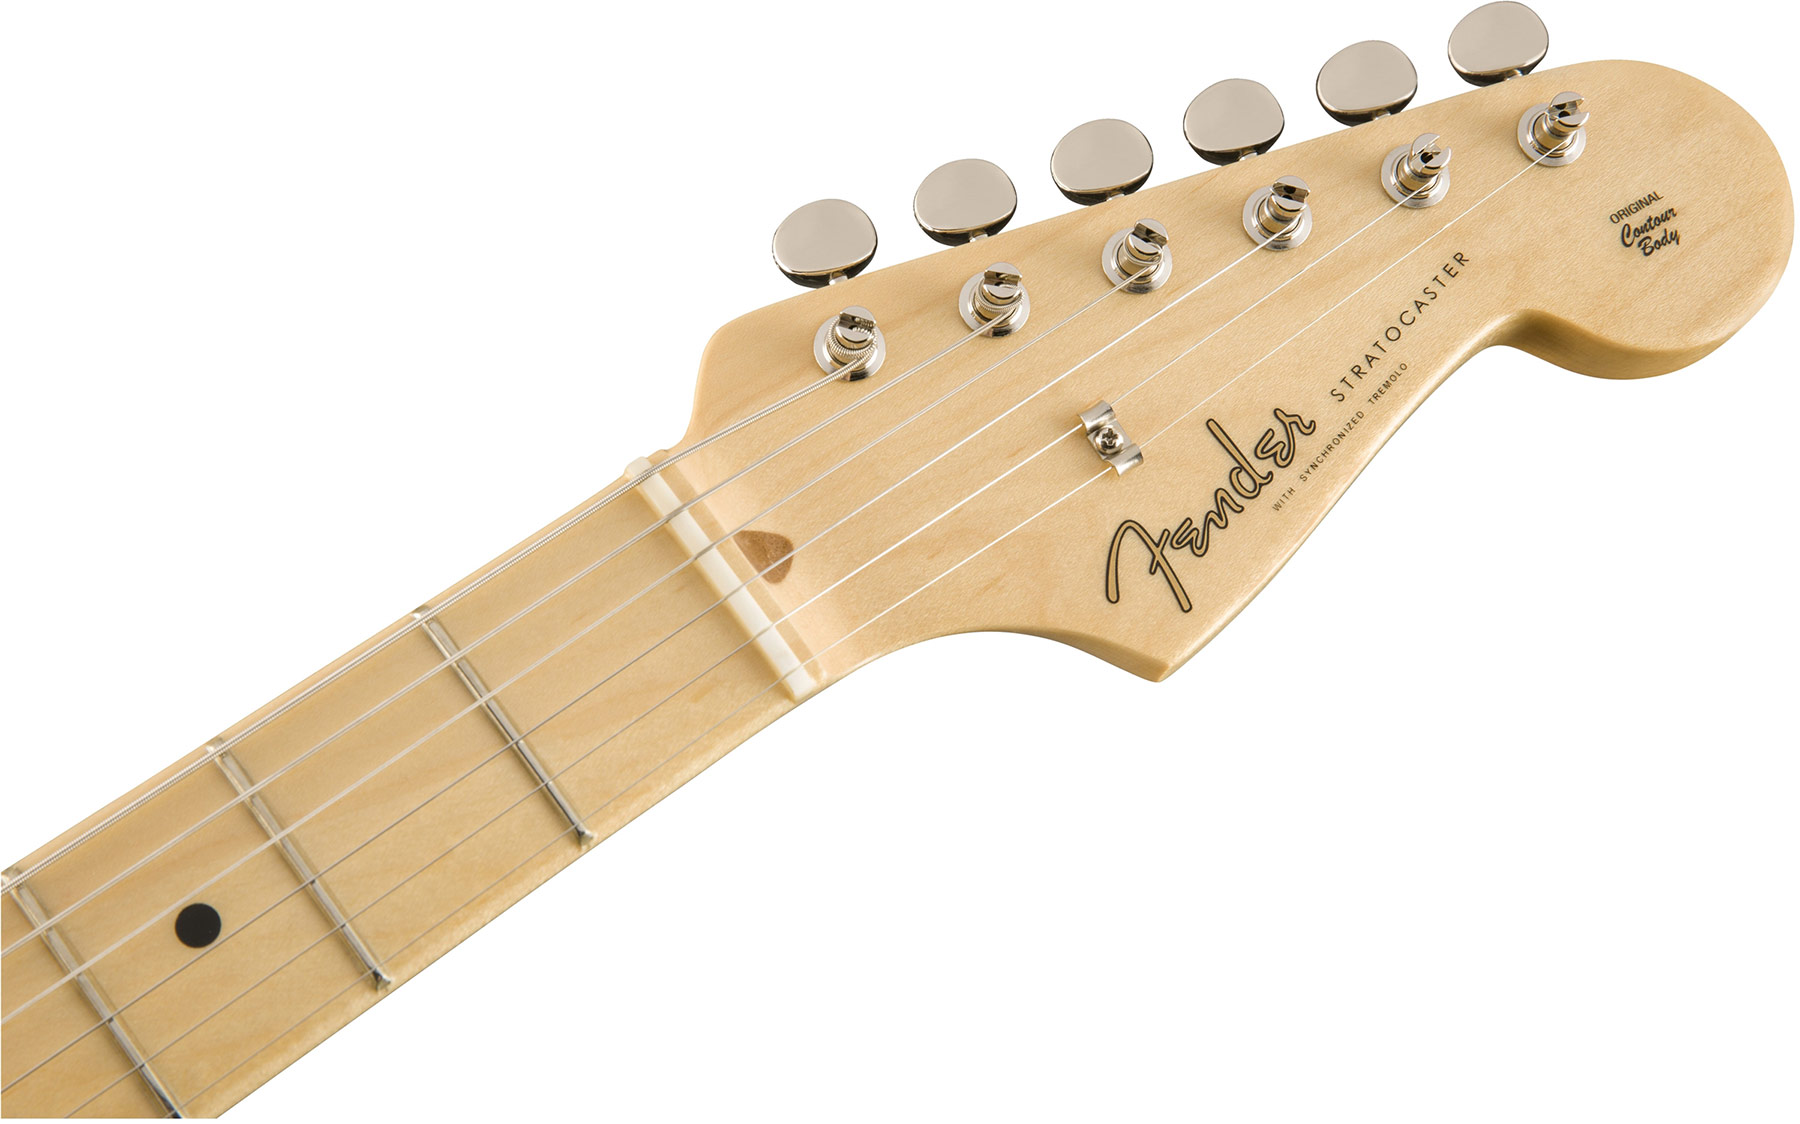 Fender Strat '50s American Original Usa Sss Mn - 2-color Sunburst - E-Gitarre in Str-Form - Variation 2